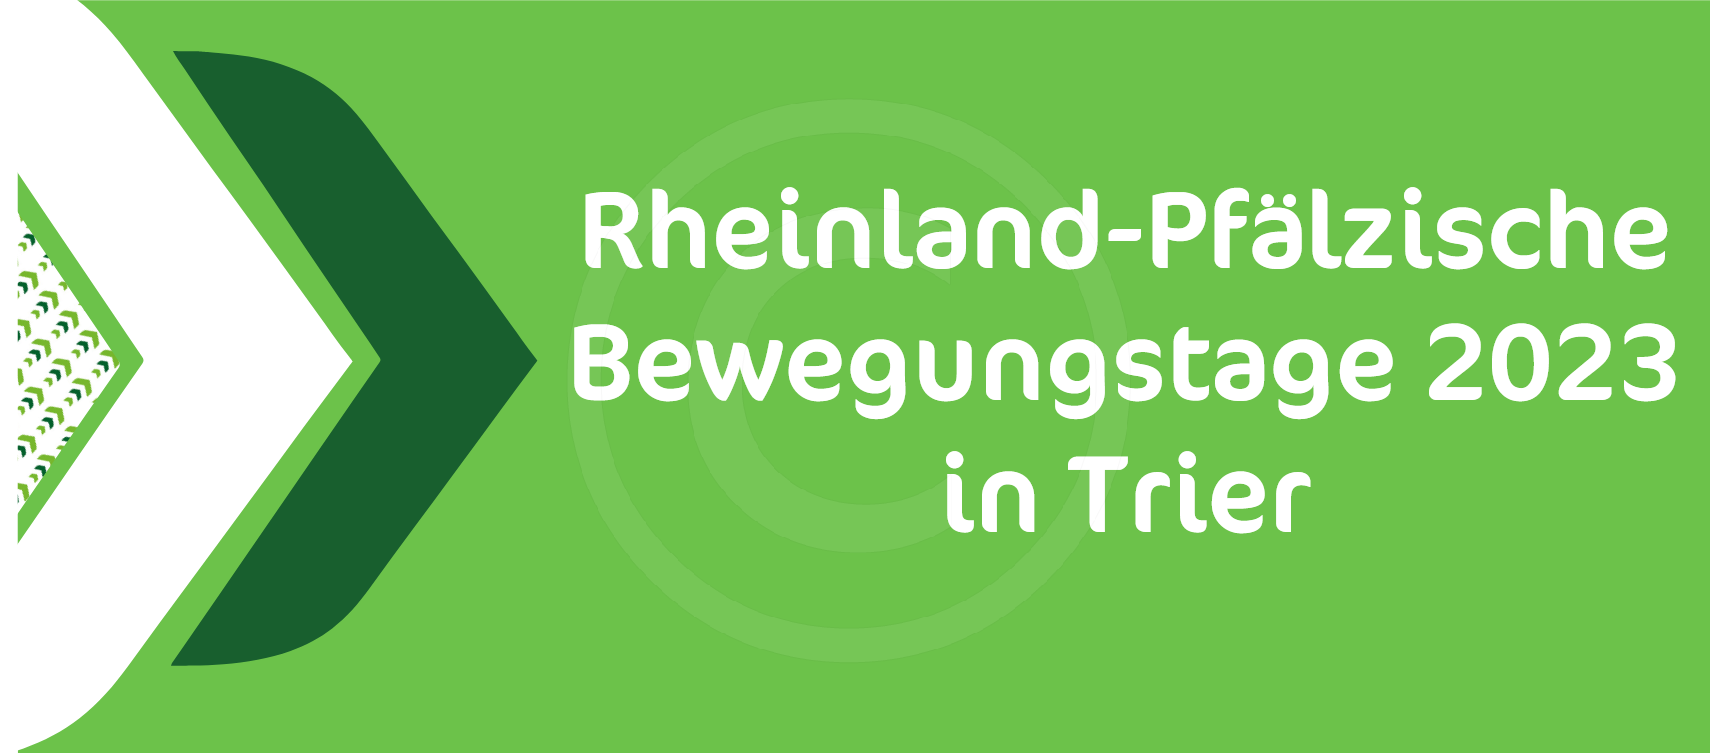 Rheinland-Pfälzische Bewegungstage 2023 in Trier